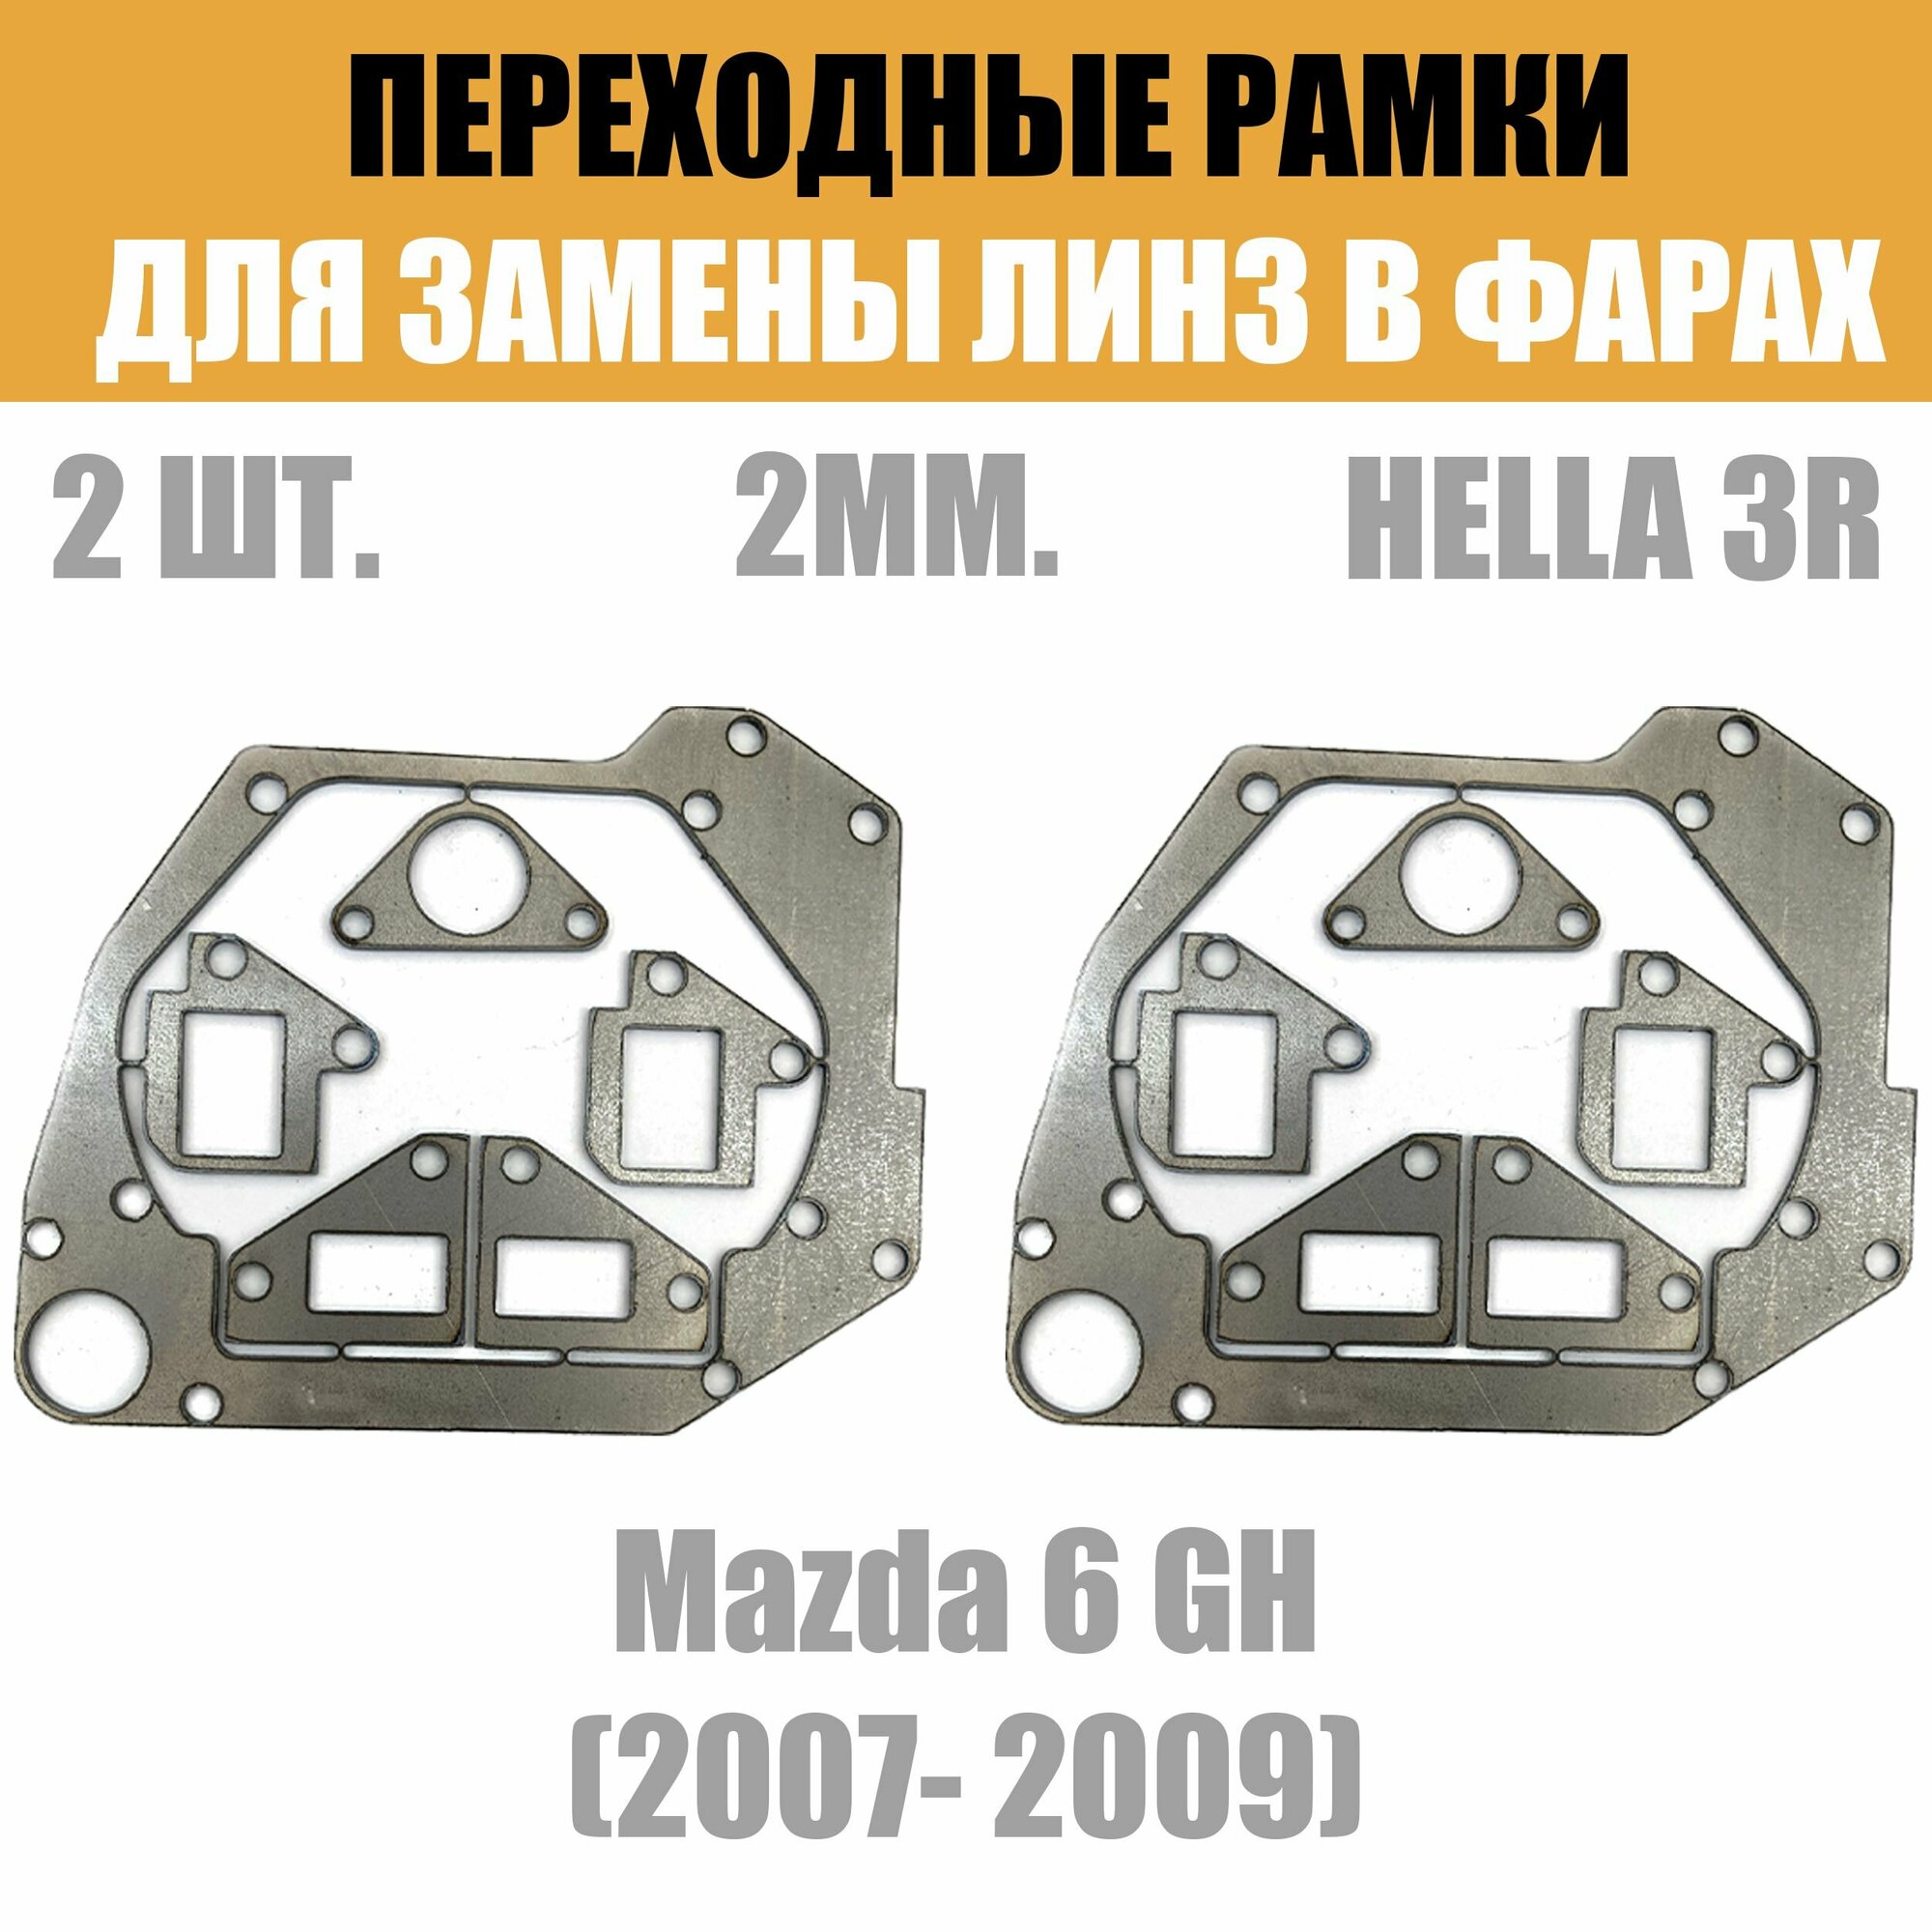 Переходные рамки для линз №47 на Mazda 6 GH (2007- 2009) под модуль Hella 3R/Hella 3 (Комплект, 2шт)